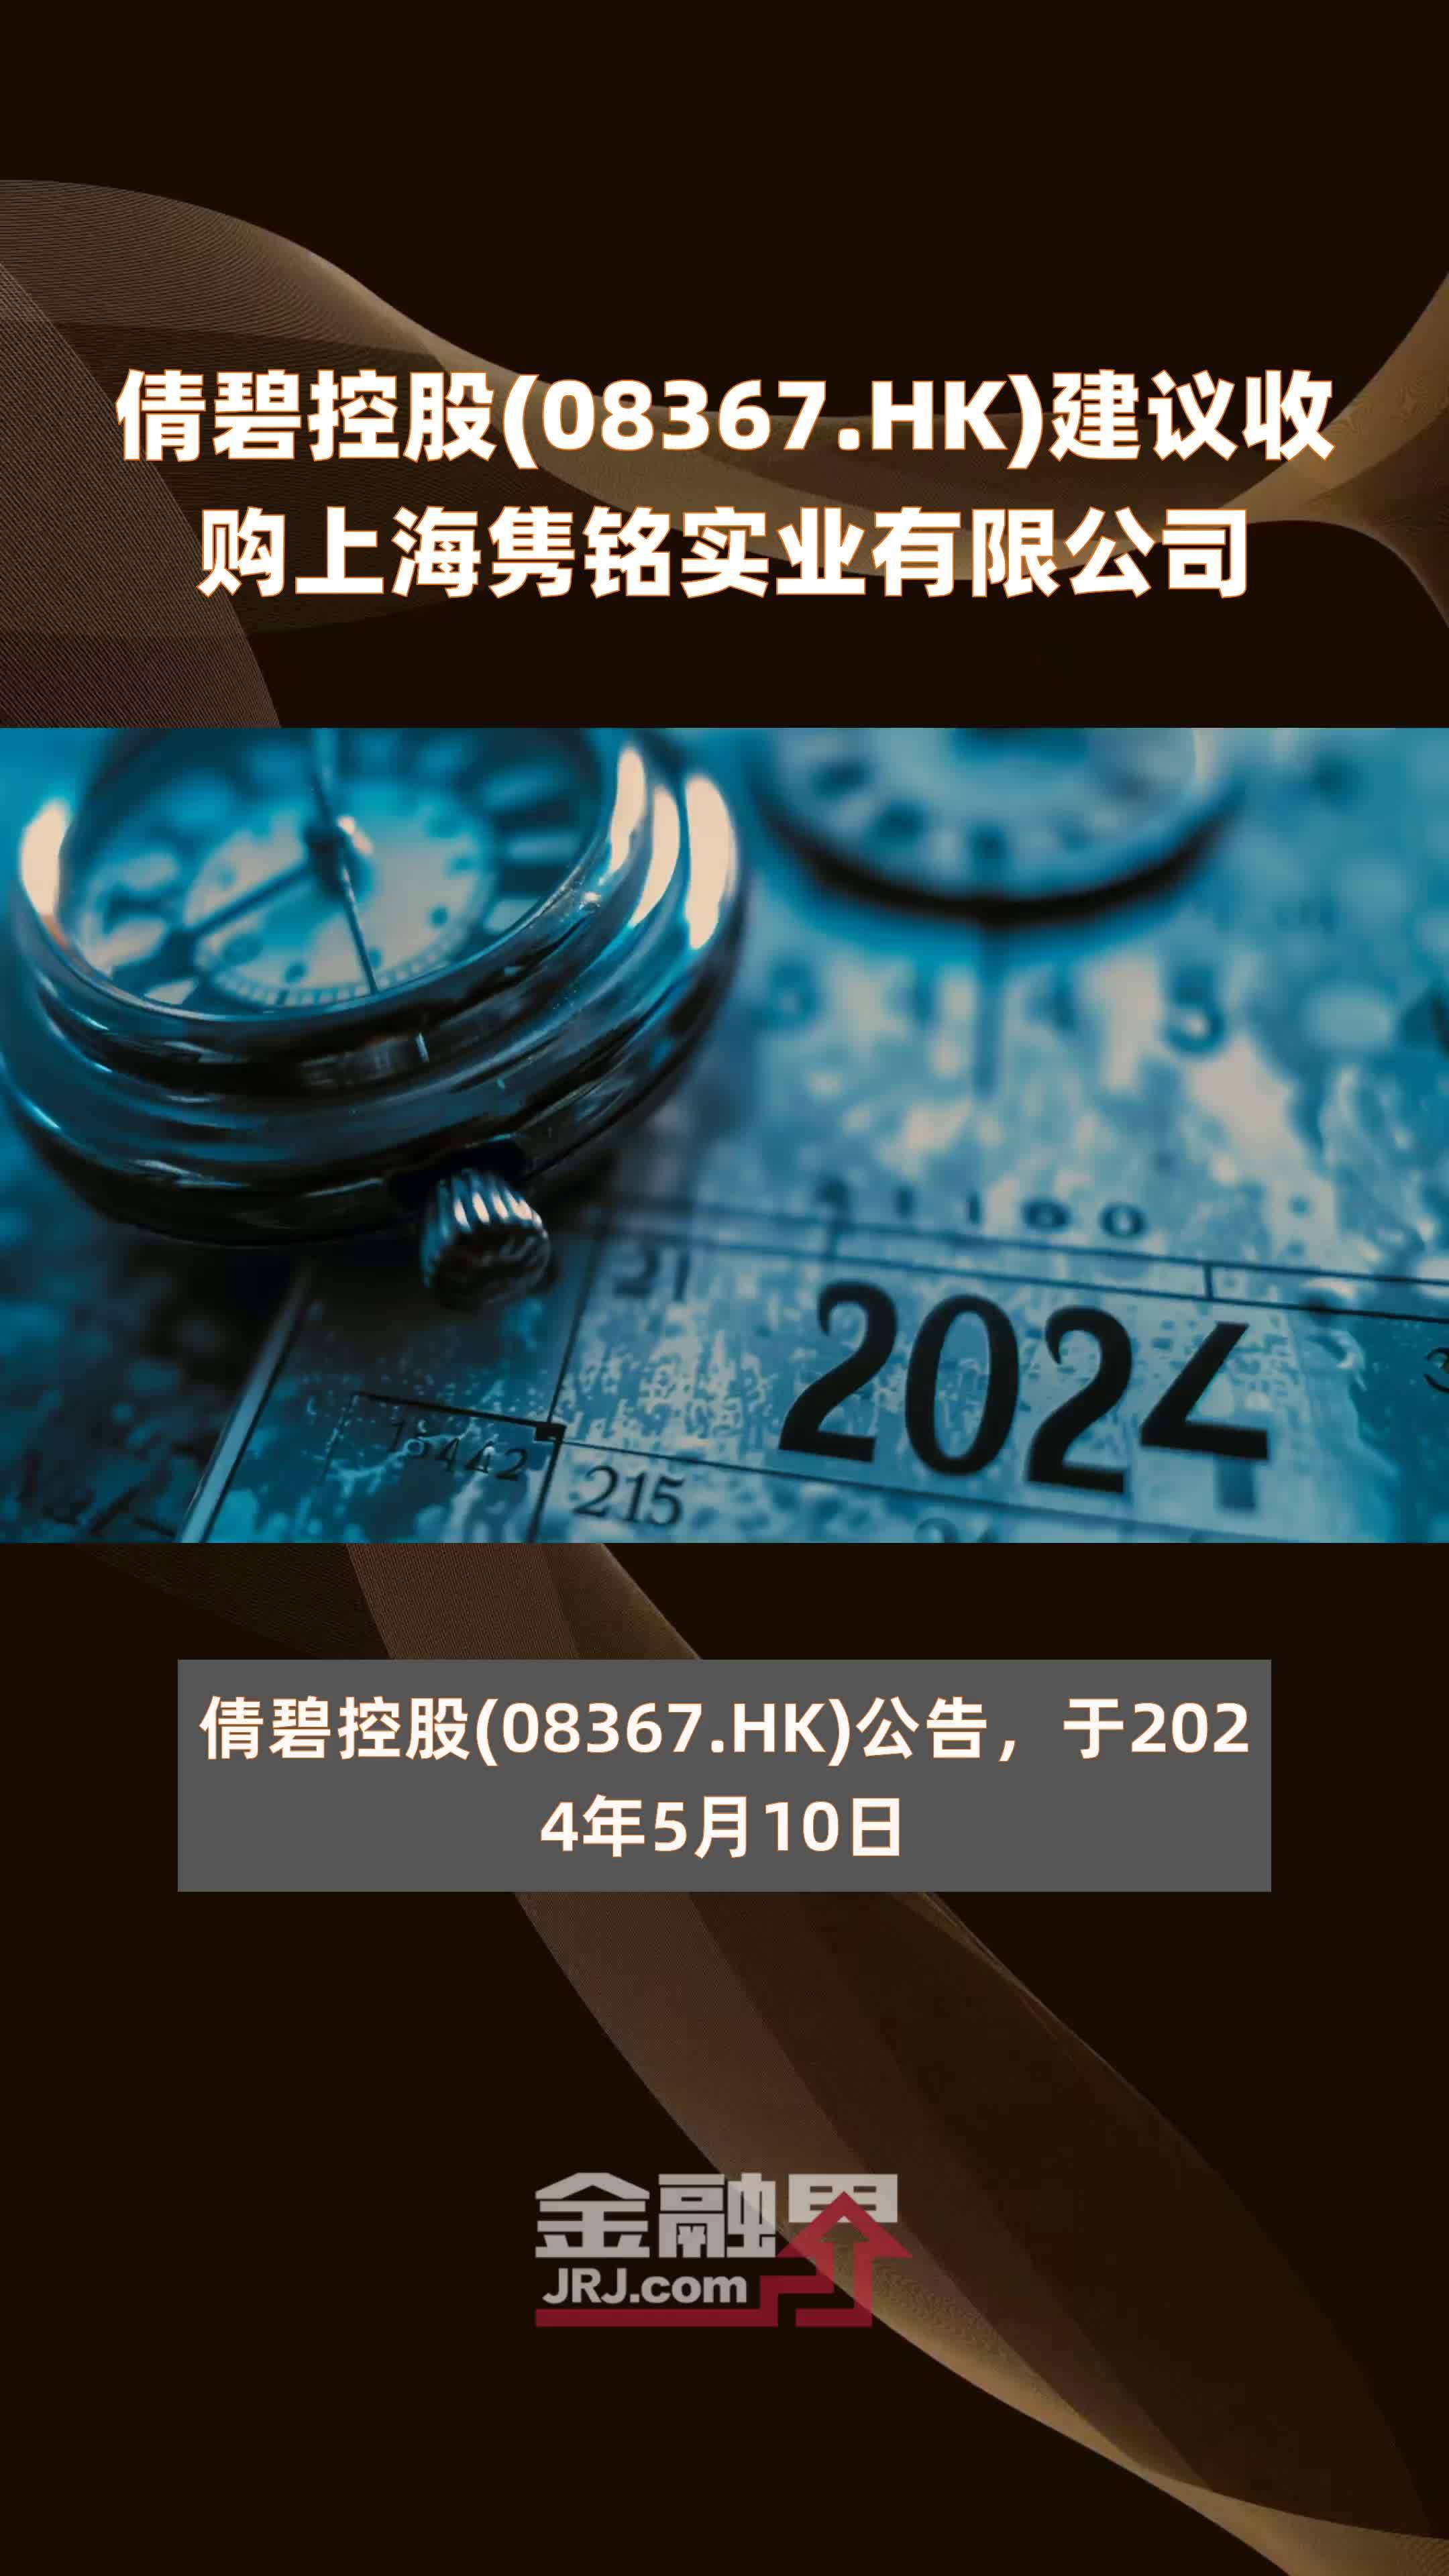 倩碧控股(08367.HK)建议收购上海隽铭实业有限公司 |快报